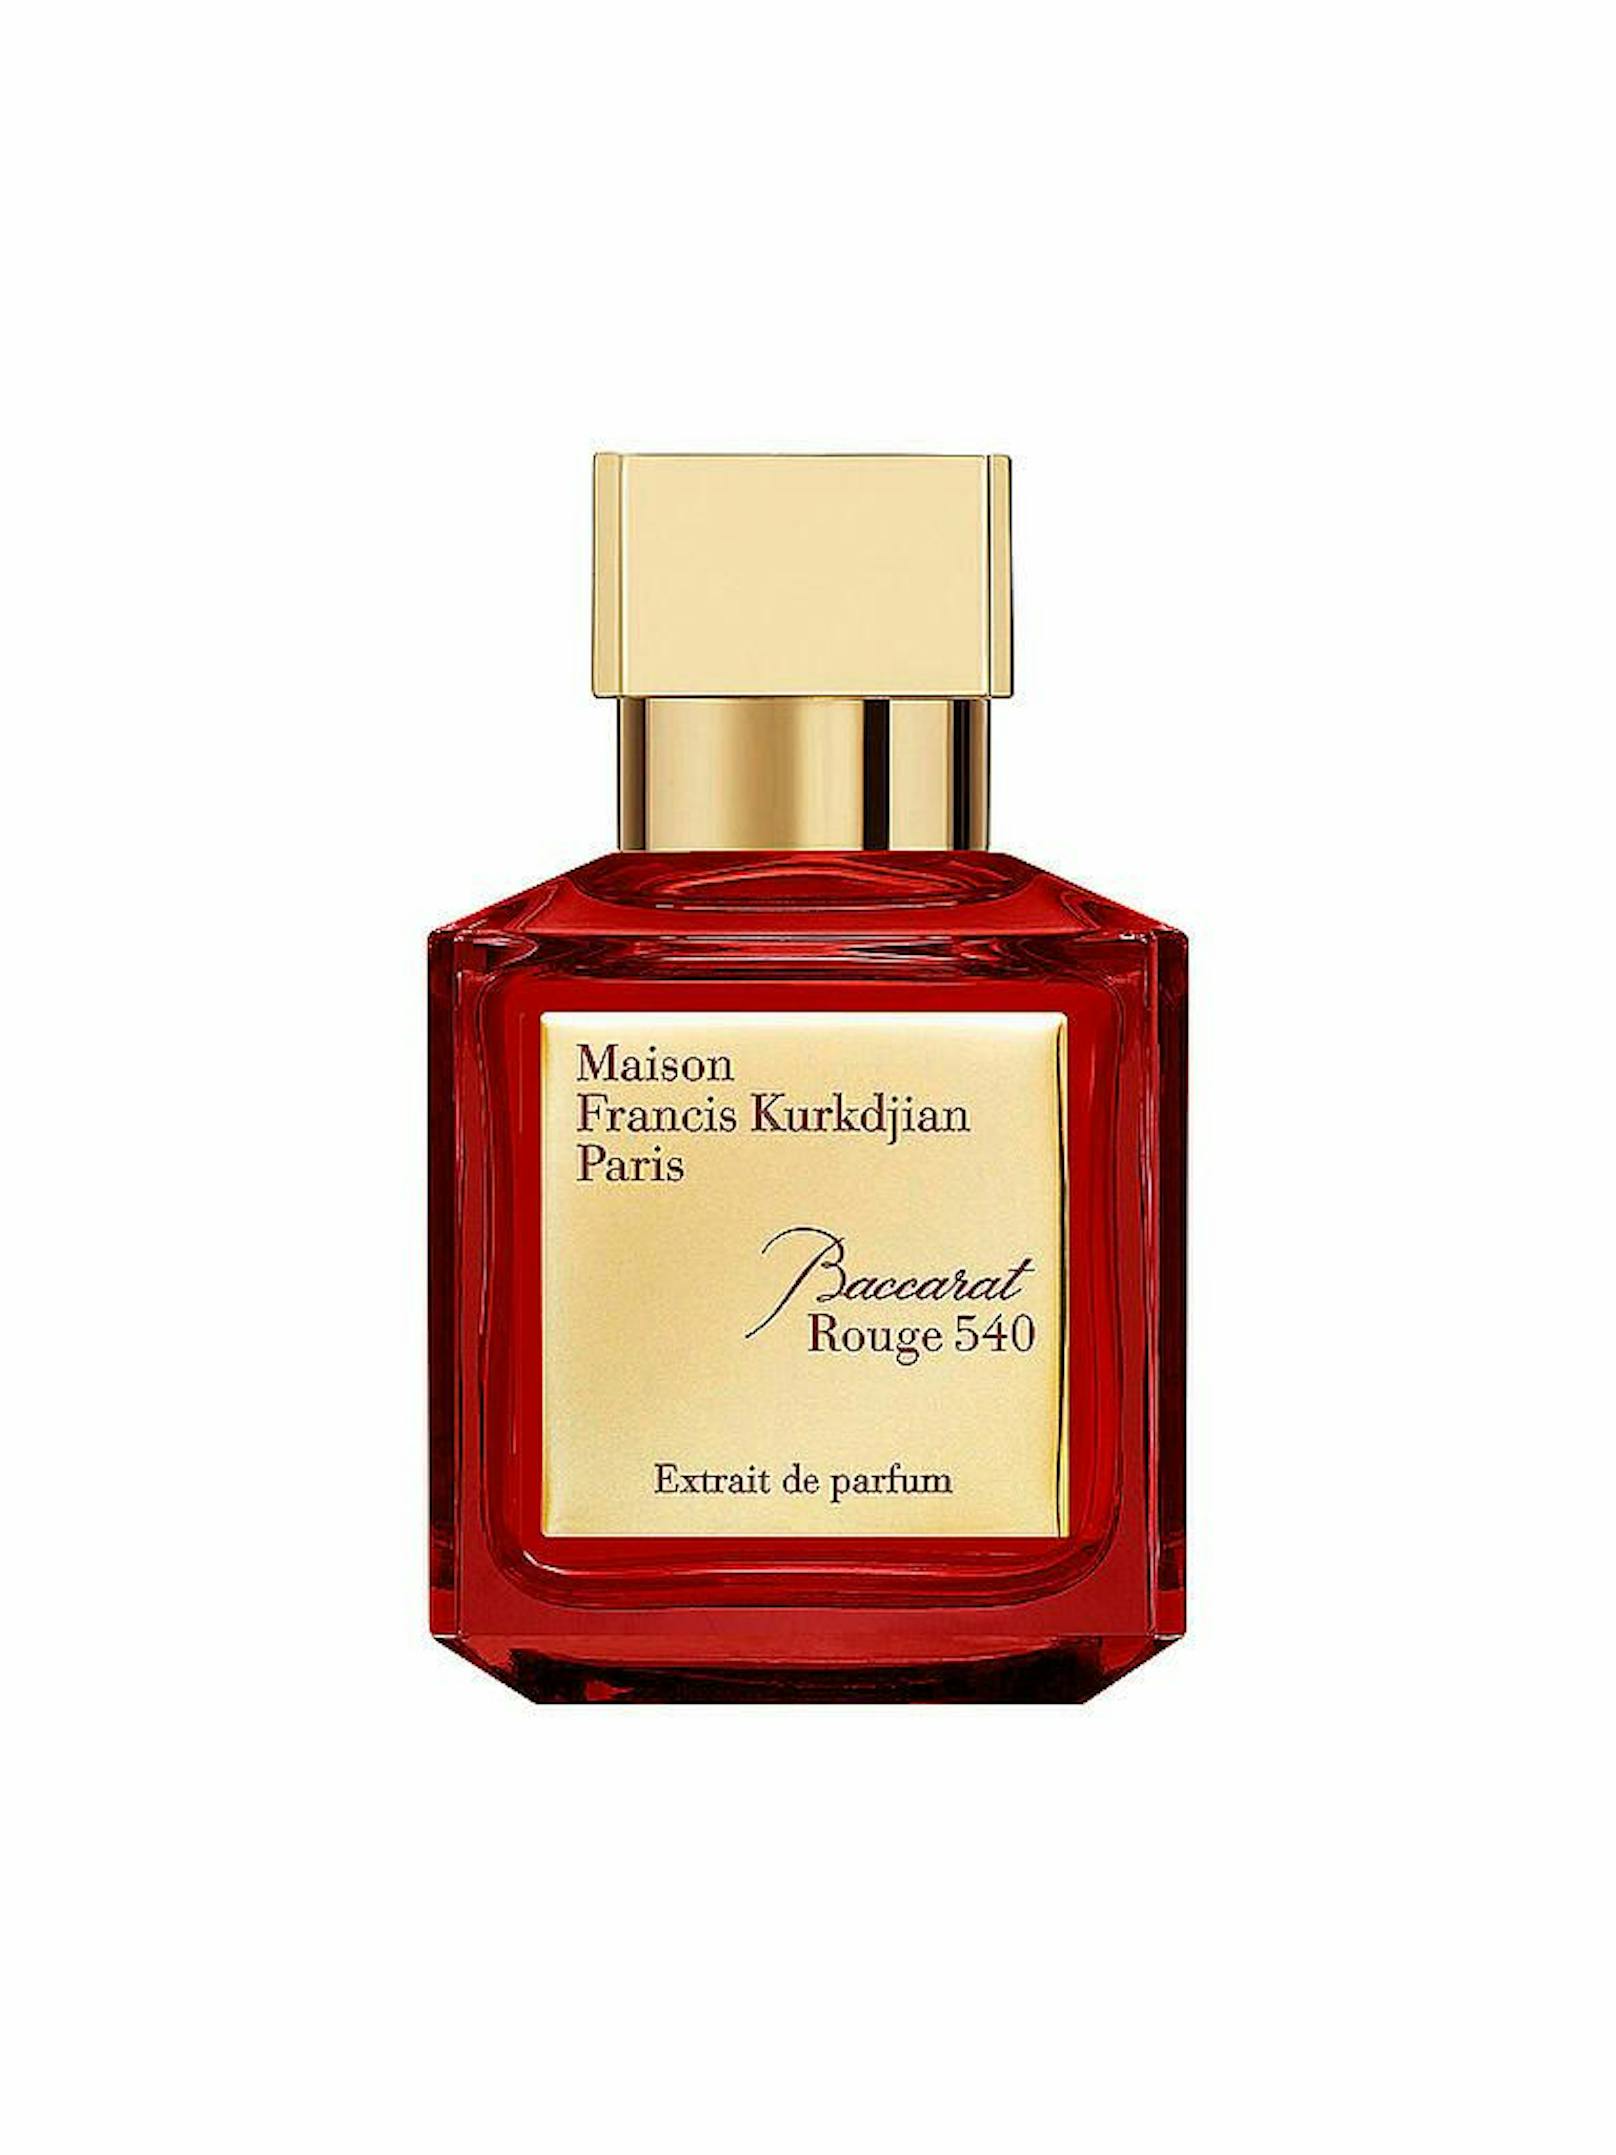 Jeder Parfum-Fanatiker ist bestimmt mit dem Baccarat Rouge 540 vertraut. Das Flakon ist aus Meisterhand entstanden und kann um 340 Euro erworben werden.